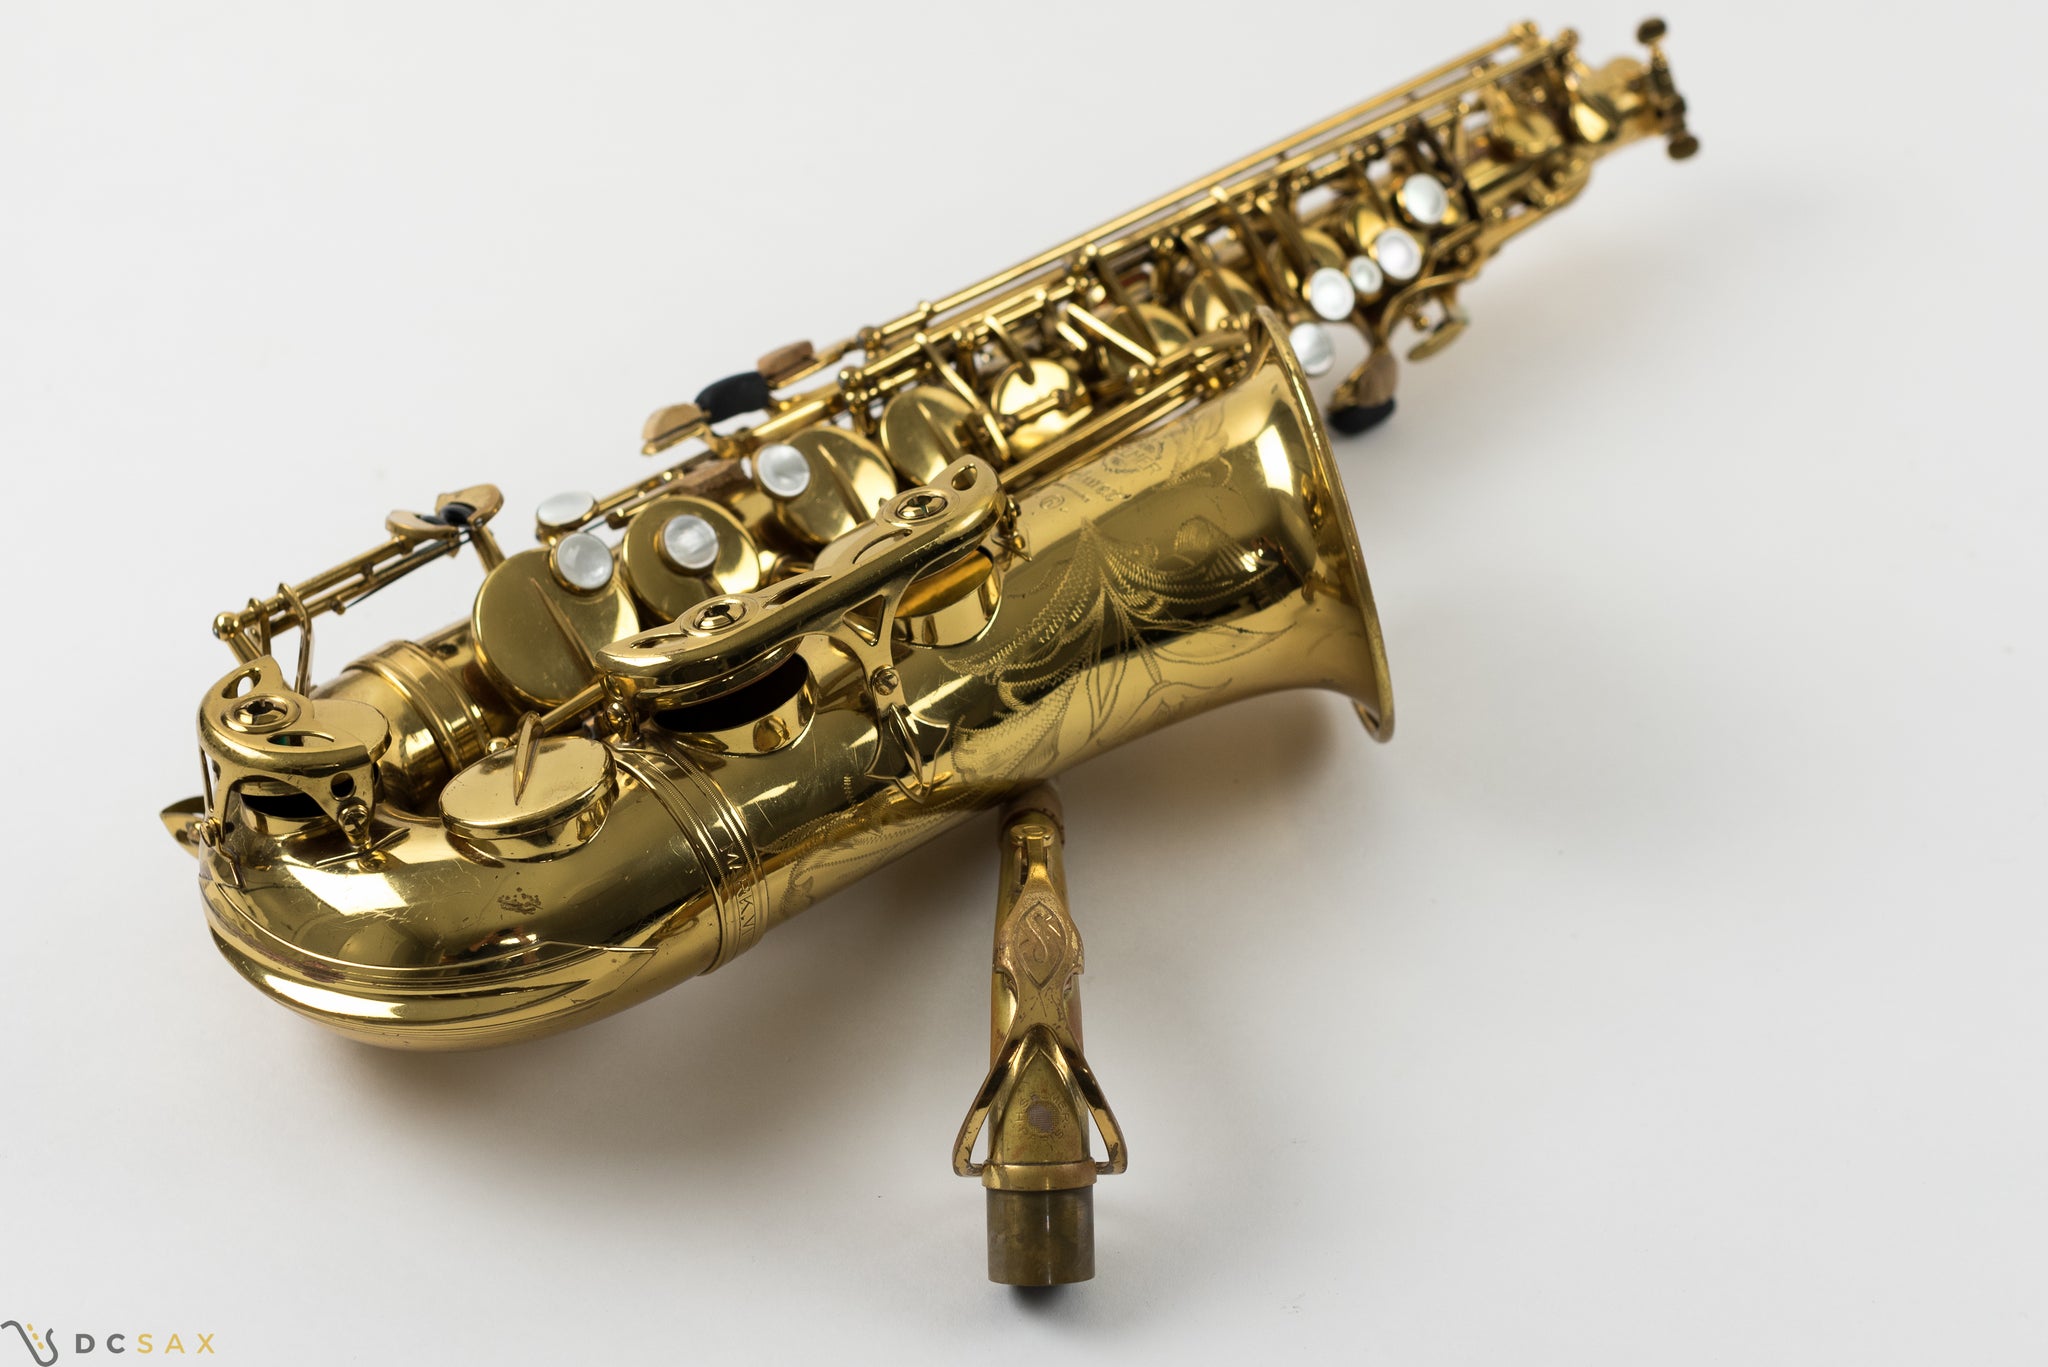 195,xxx Selmer Mark VI Alto Saxophone, 92% Original Lacquer, HIGH F#, Video